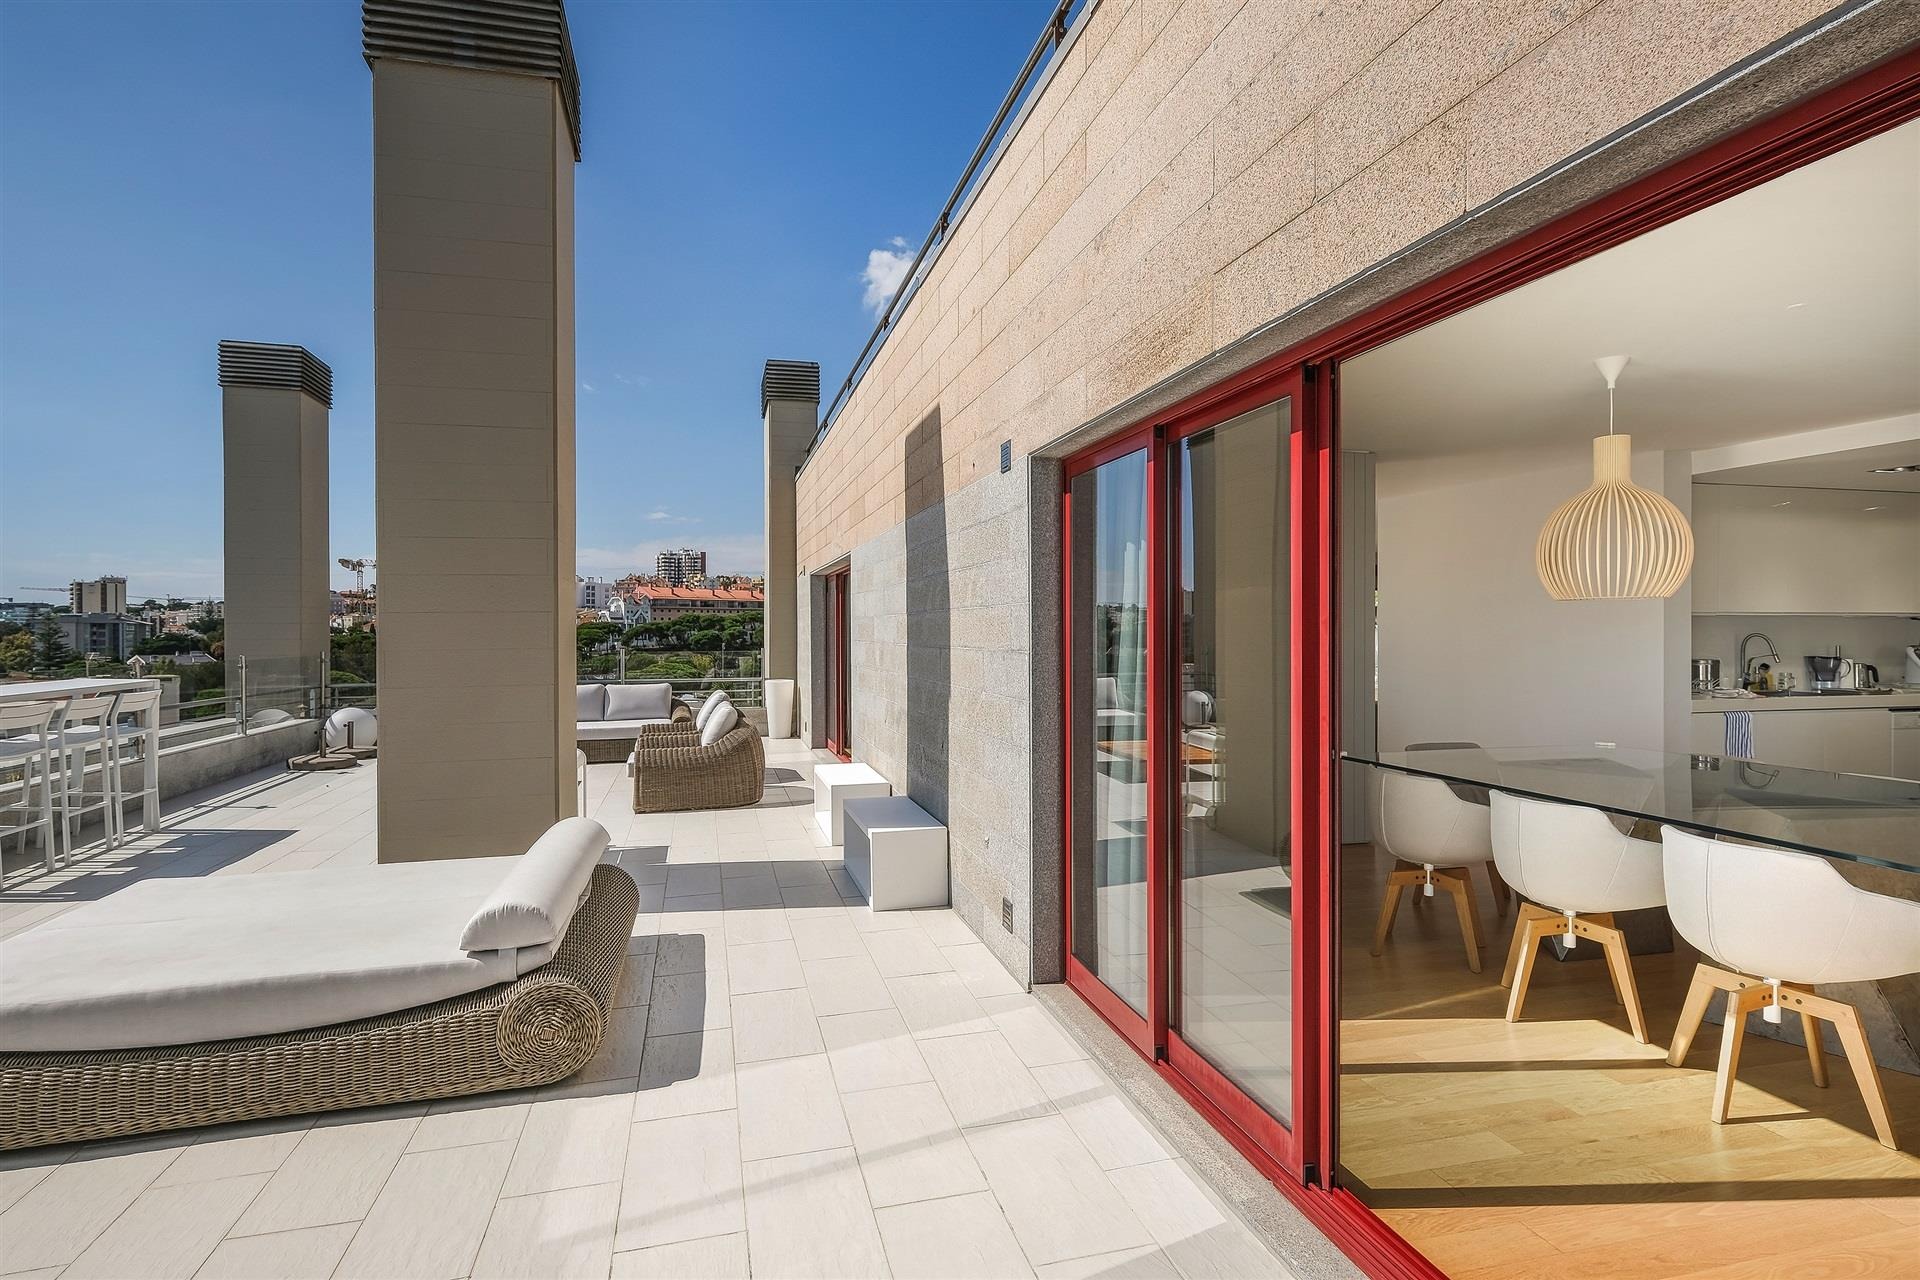 Portal Inmobiliario de Lujo en Estoril, presenta piso de lujo venta en Cascais, inmueble lujoso para comprar y apartamento exclusivo en venta en Lisboa.